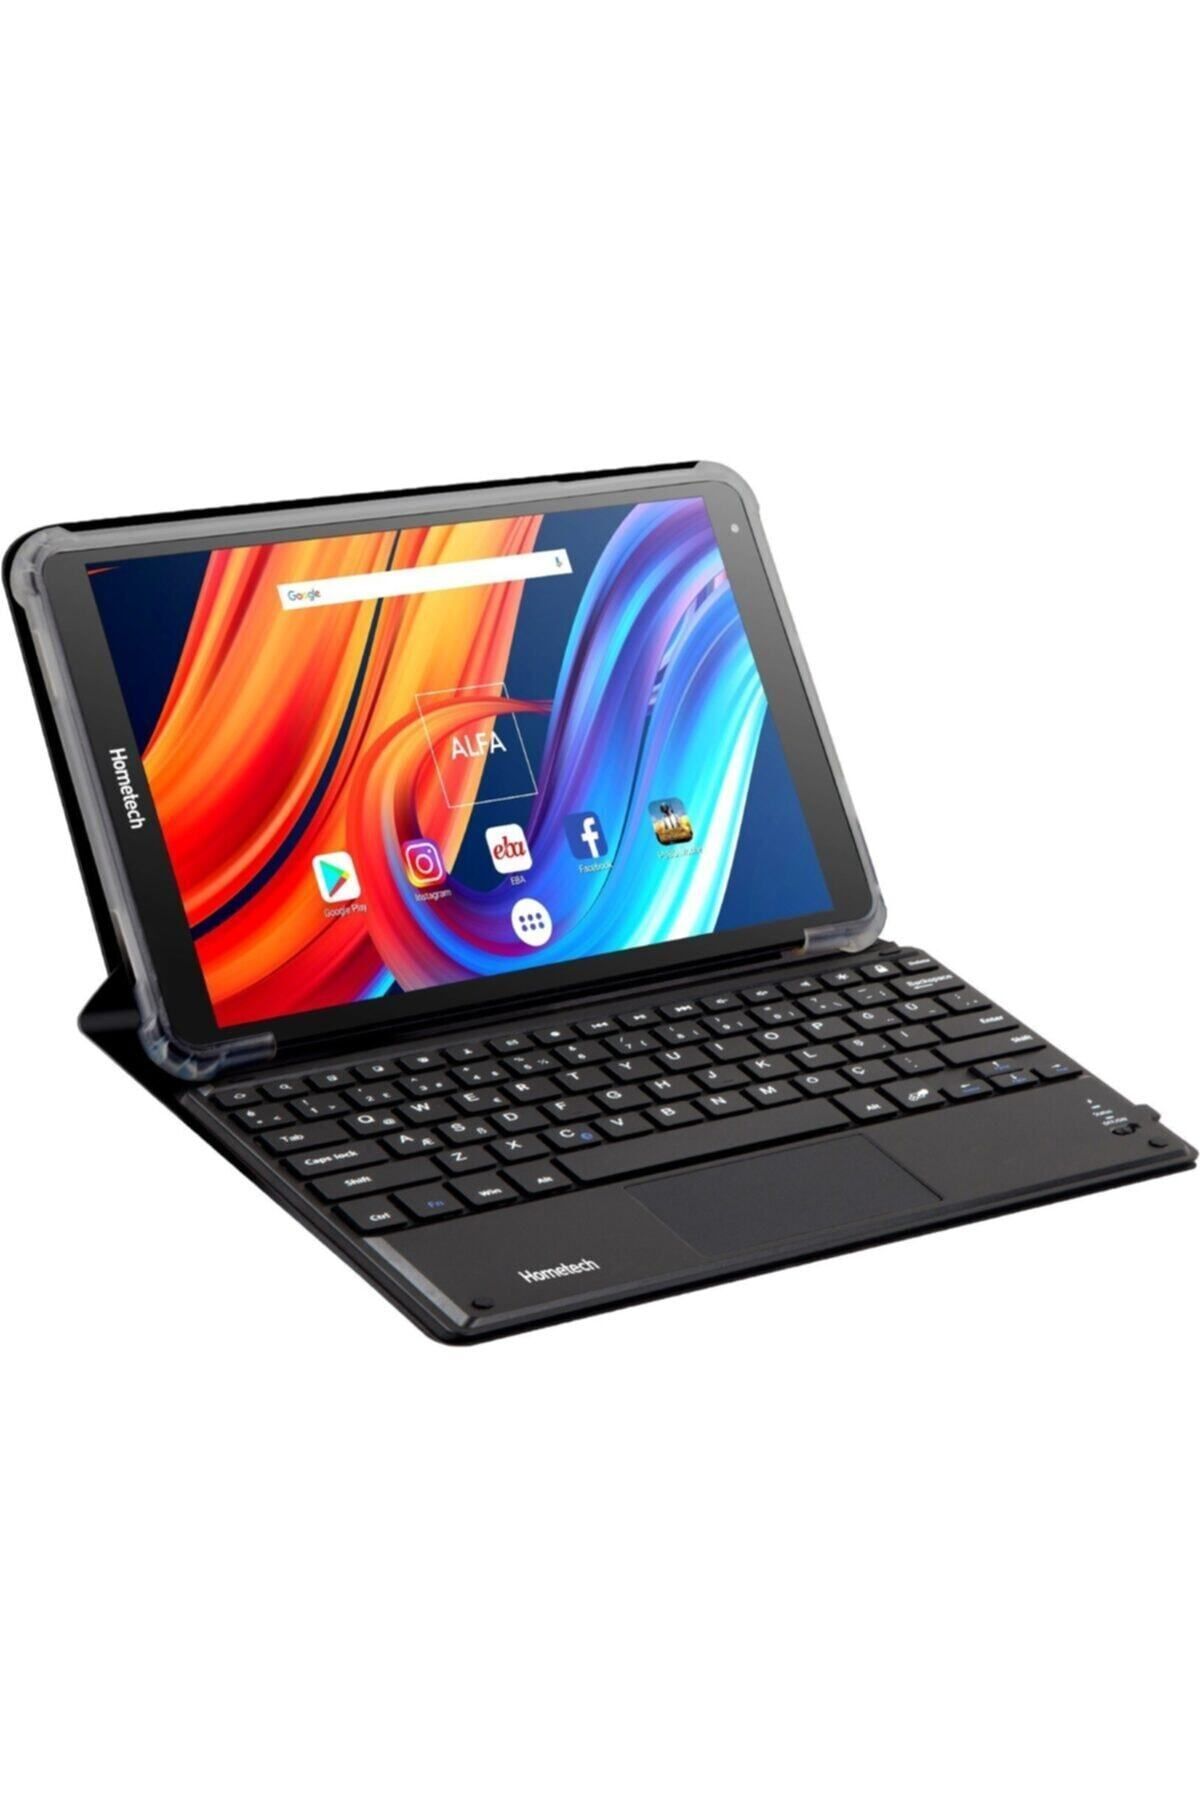 Hometech Siyah Alfa Ips Tablet Bilgisayar 10tb 4gb 64gb 10 1